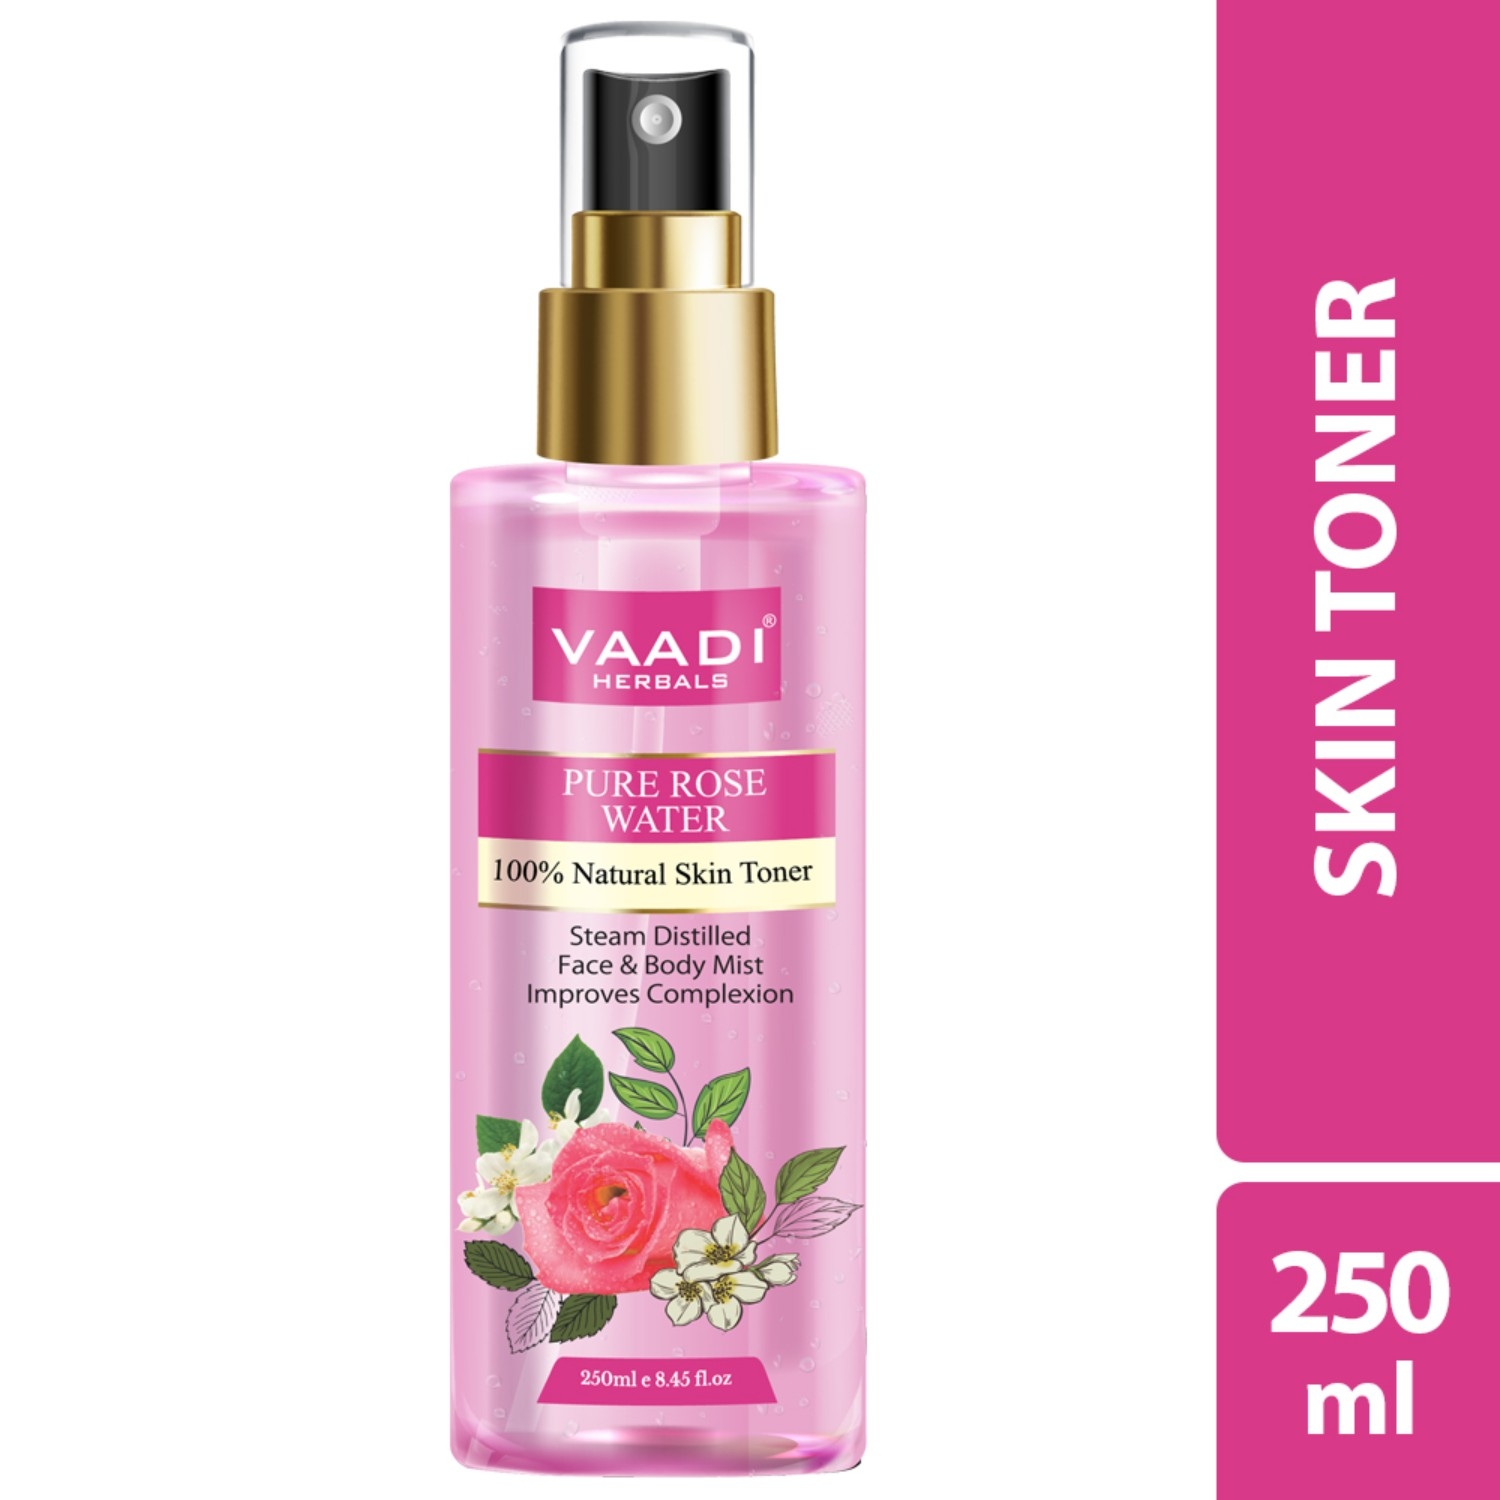 Vaadi Herbals | Vaadi Herbals Pure Rose Water Natural Skin Toner (250ml)